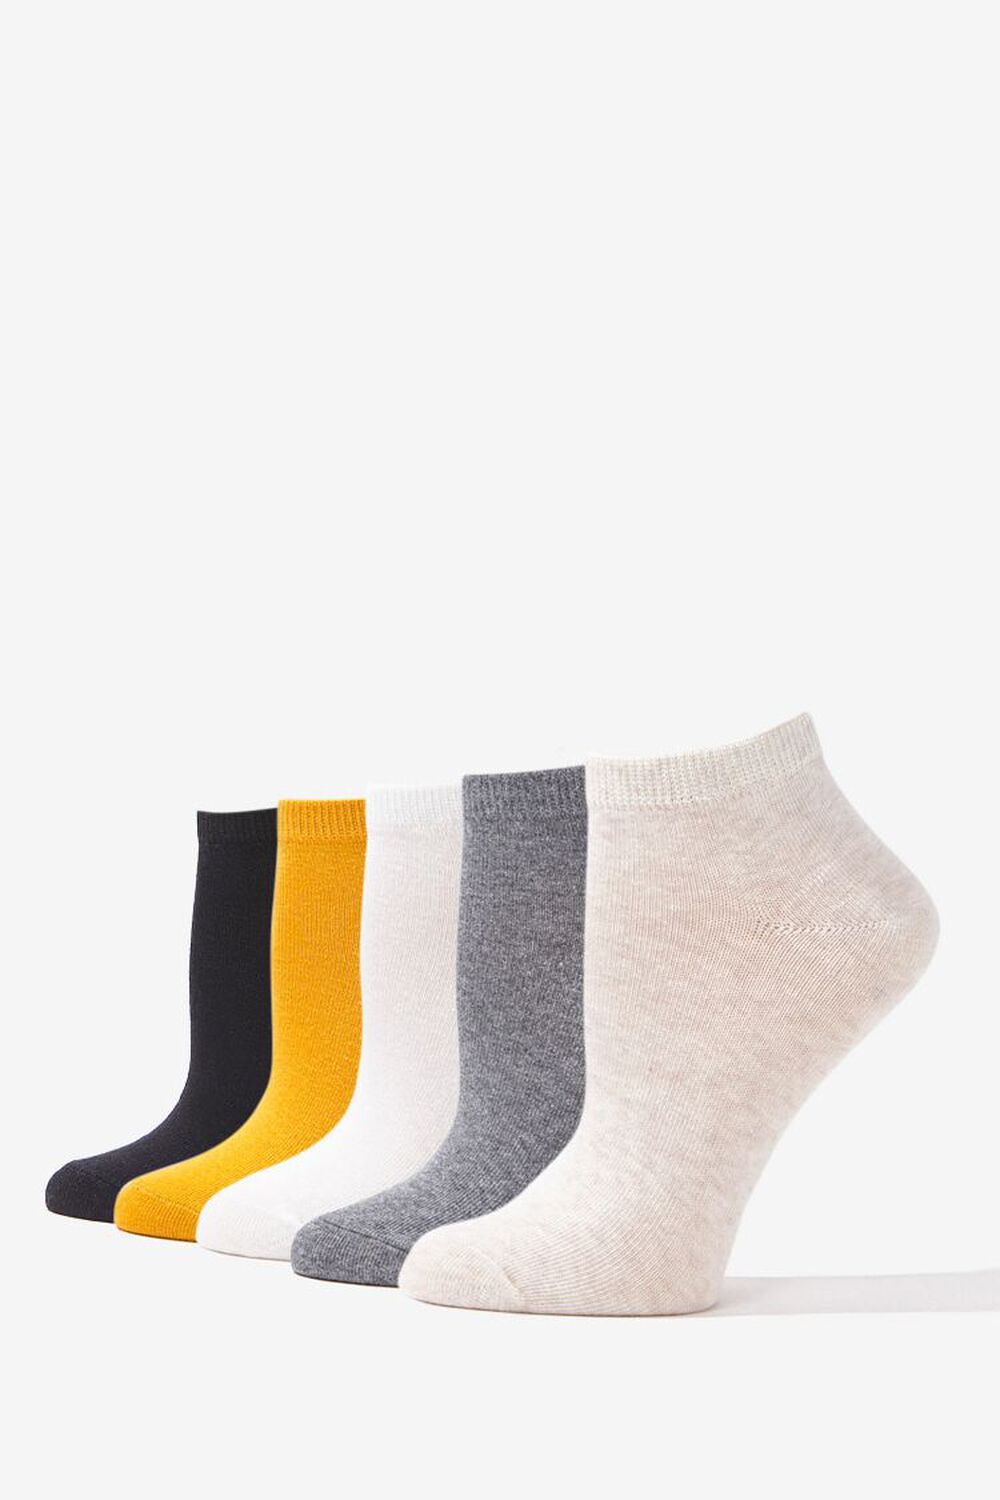 OATMEAL/BLACK Marled Ankle Socks - 5 Pack, image 1